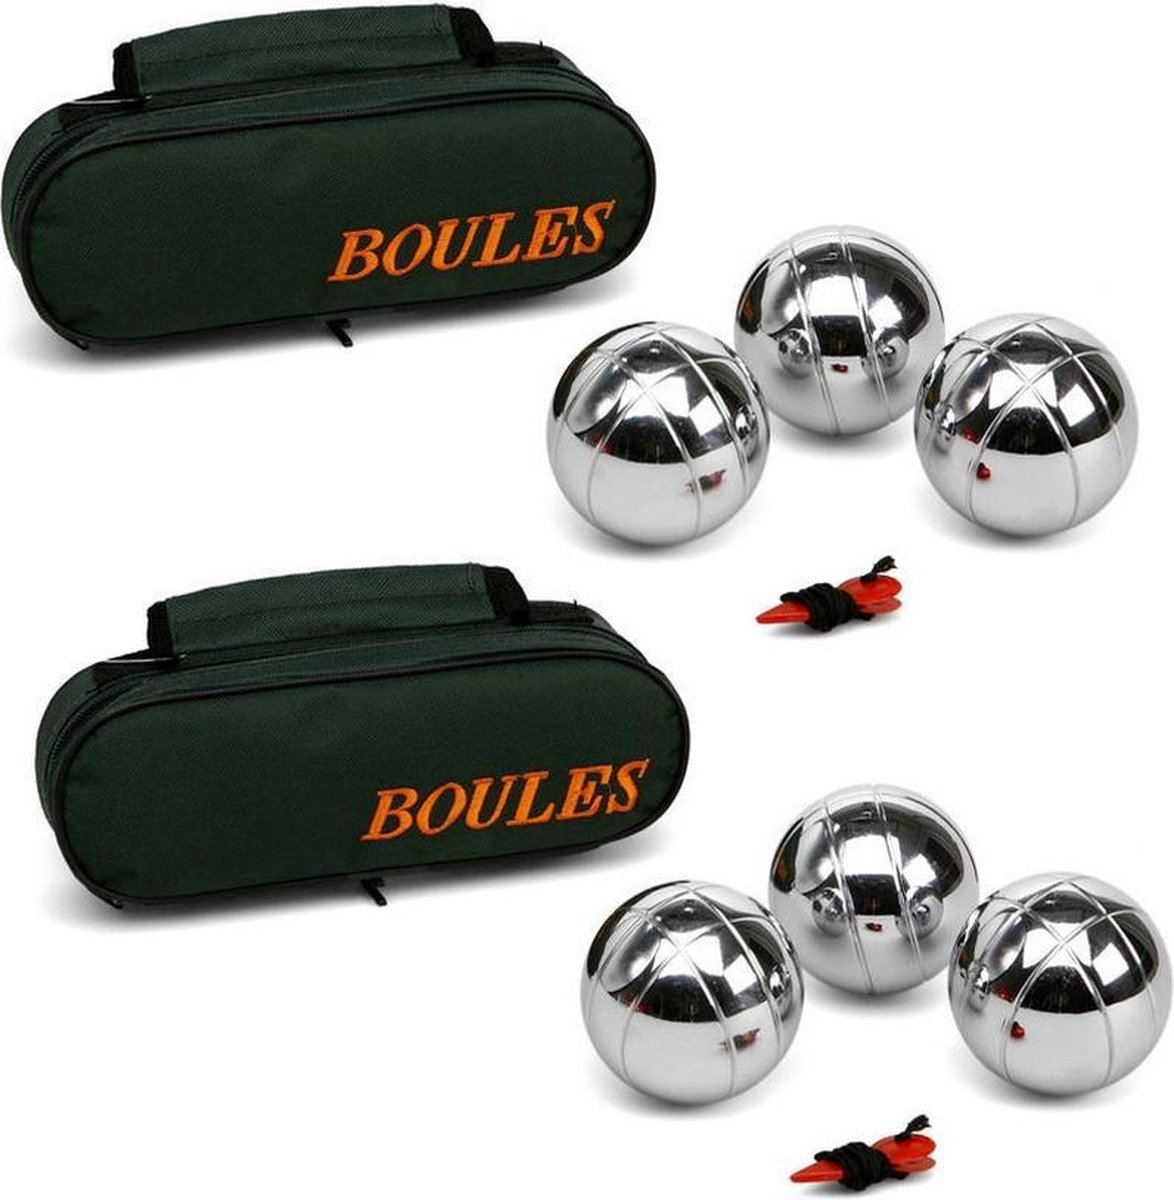 2x Zilveren jeu de boules sets in luxe tas - Kaatsbal /petanque- Actief buitenspeelgoed voor kinderen - Merkloos